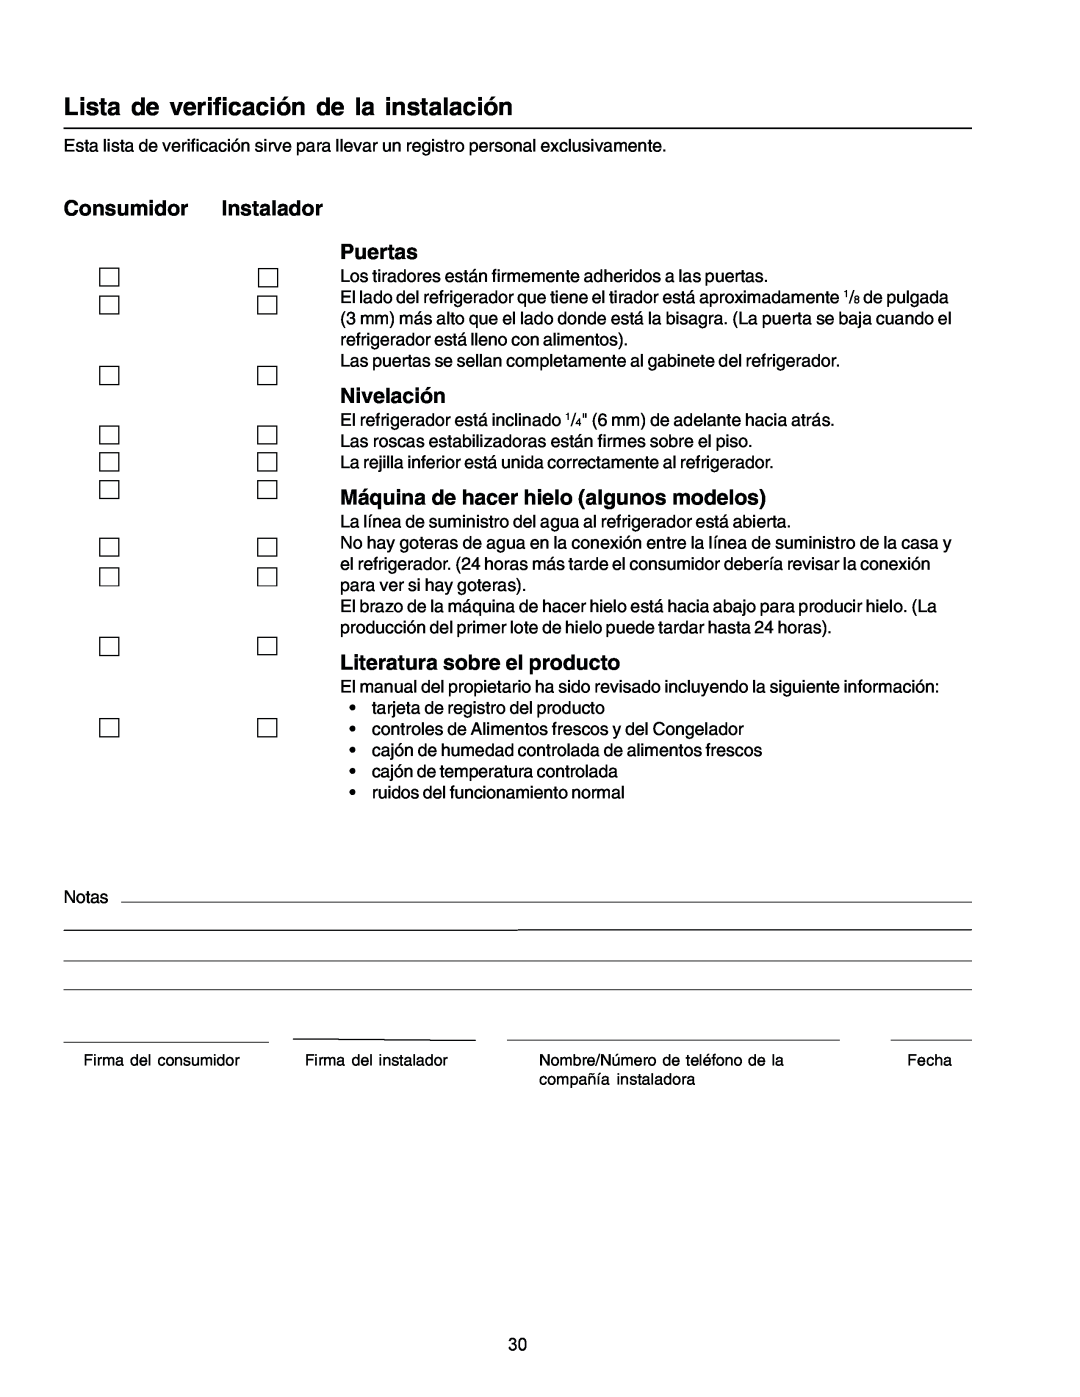 Amana IA 52204-0001 owner manual Lista de verificación de la instalación, Consumidor Instalador Puertas, Nivelación 